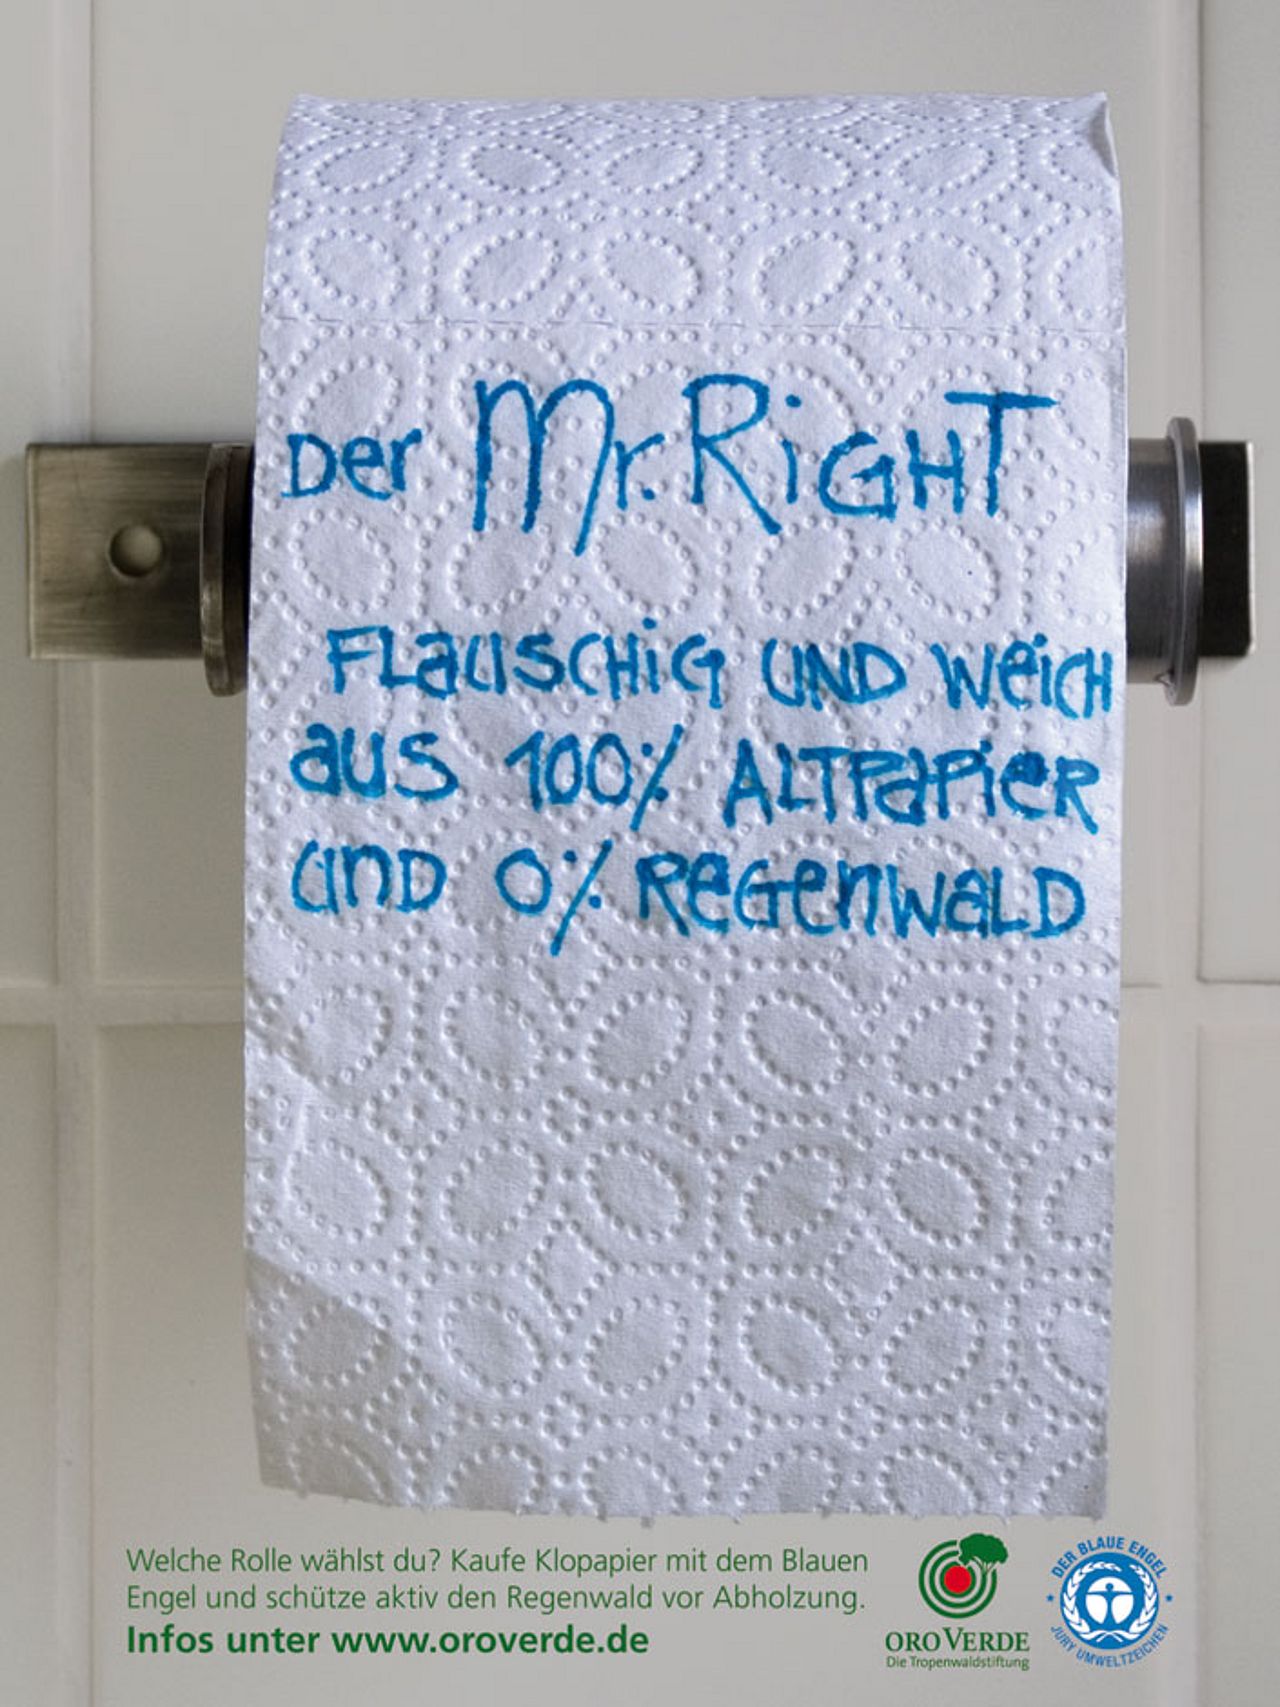 Toilettenpapier Plakat im Rahmen des Schülerwettbewerb "Geist ist geil"